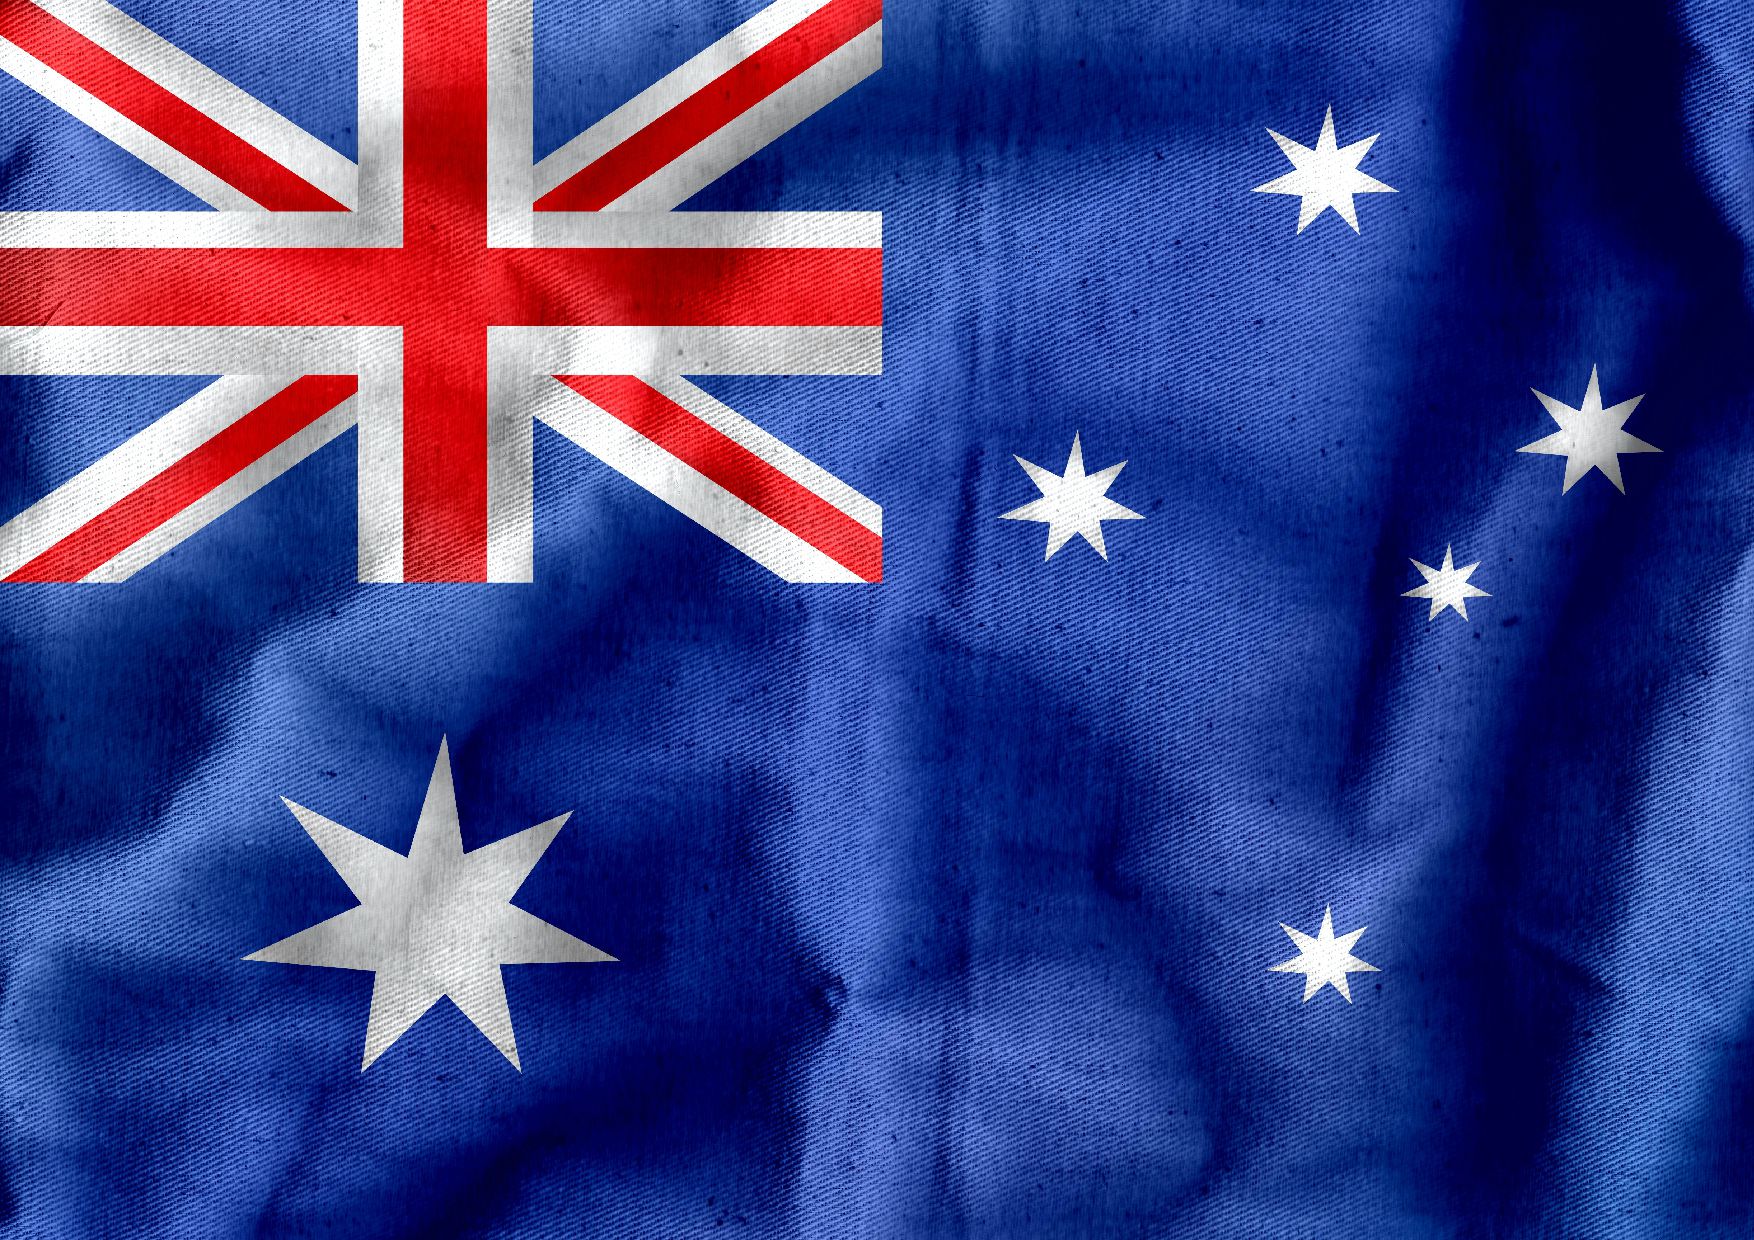 Australia flag 1